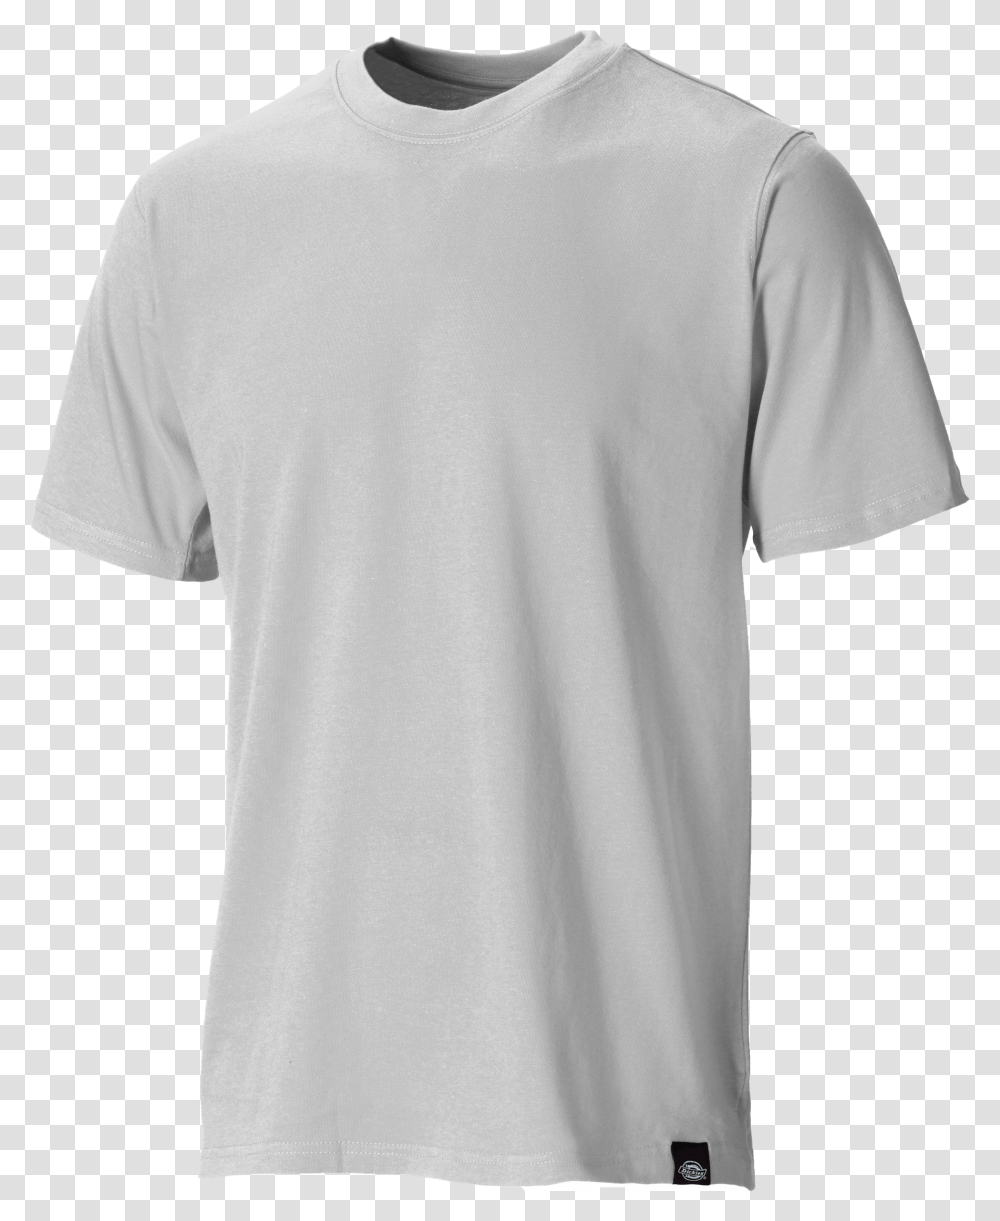 grey t shirt transparent